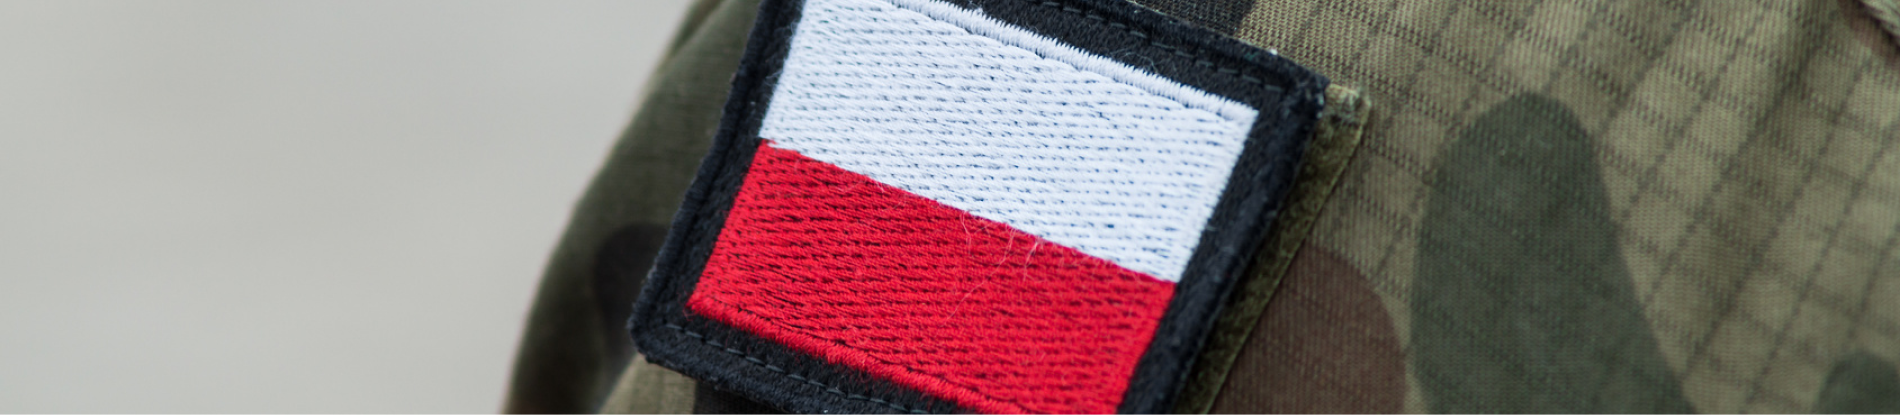 Zbliżenie na flagę Polski znajdującą się na mundurze na ramieniu. 